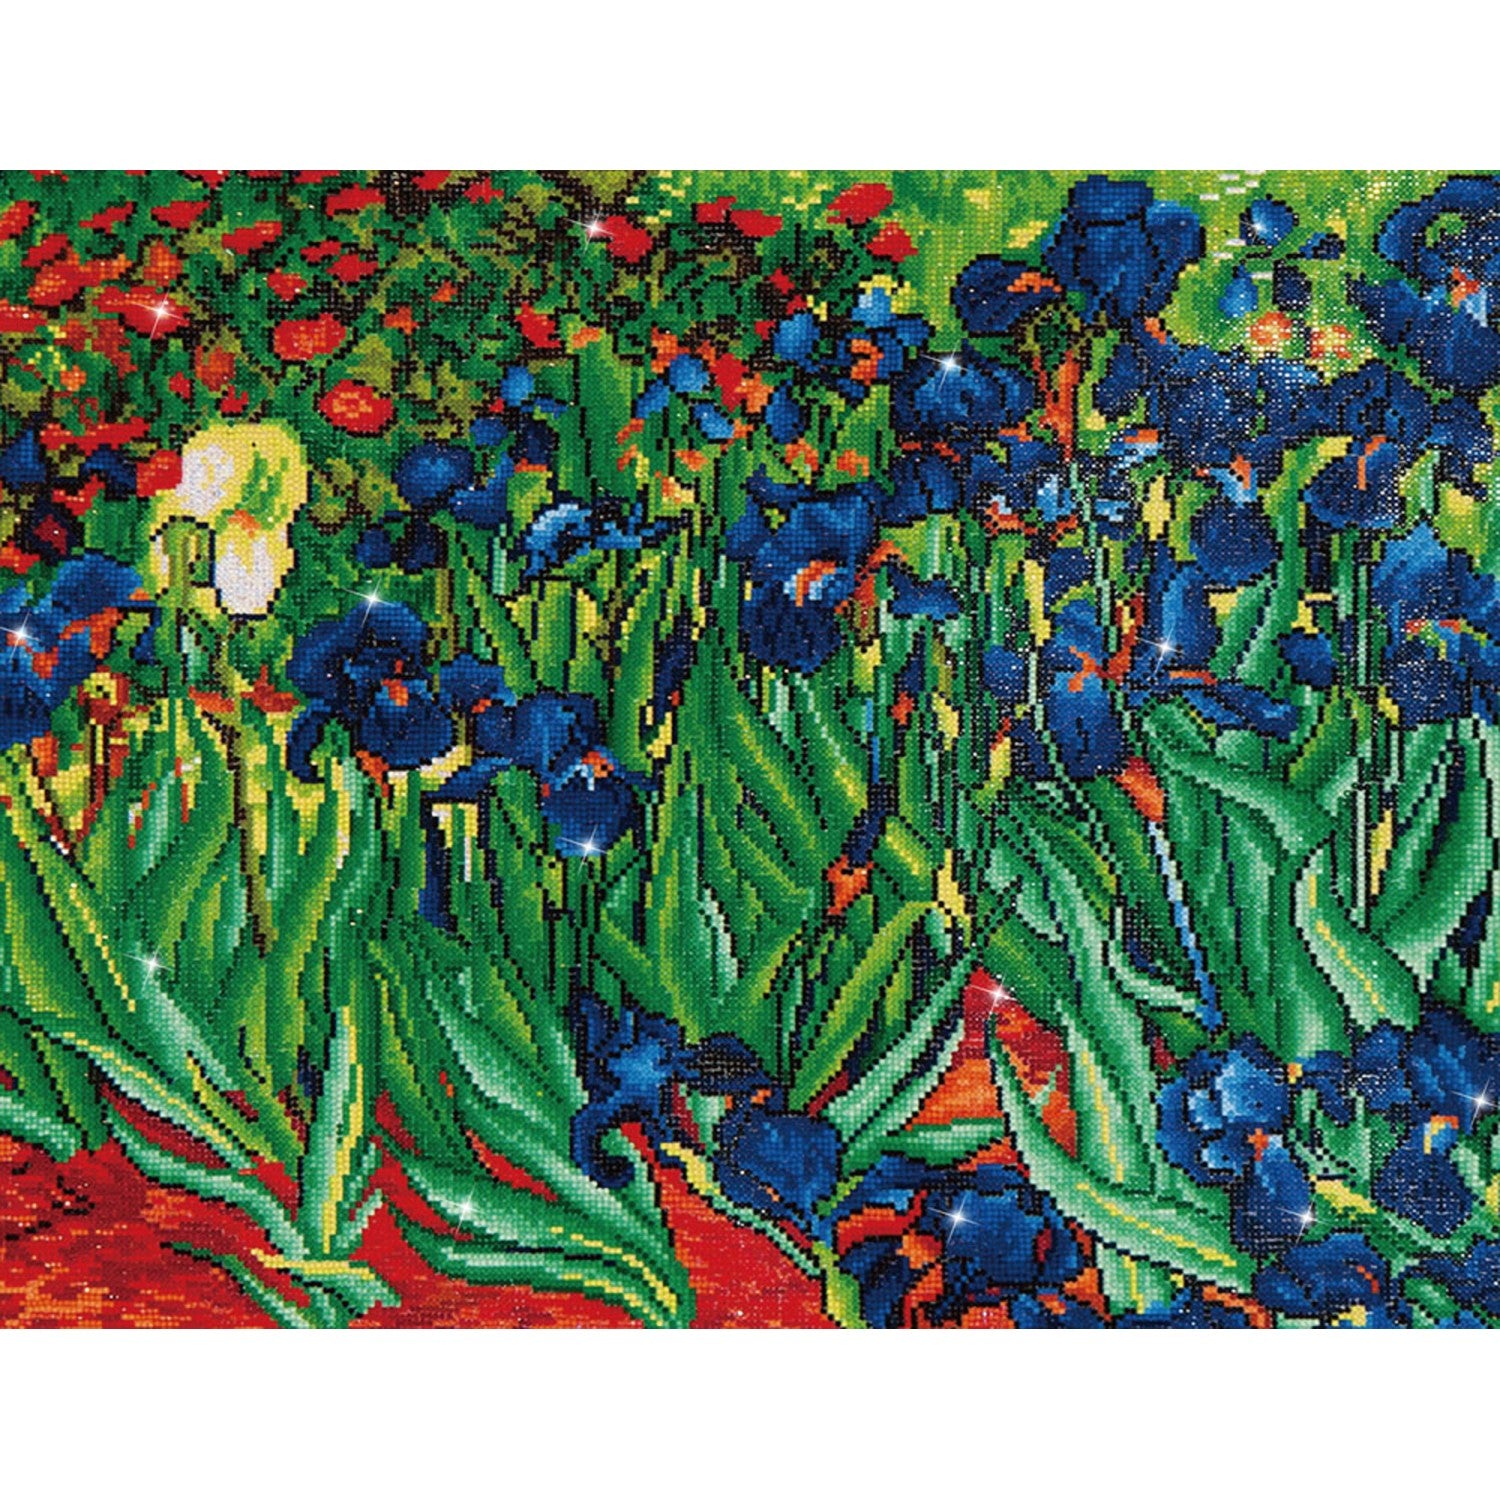 Irises - Van Gogh - Avancé